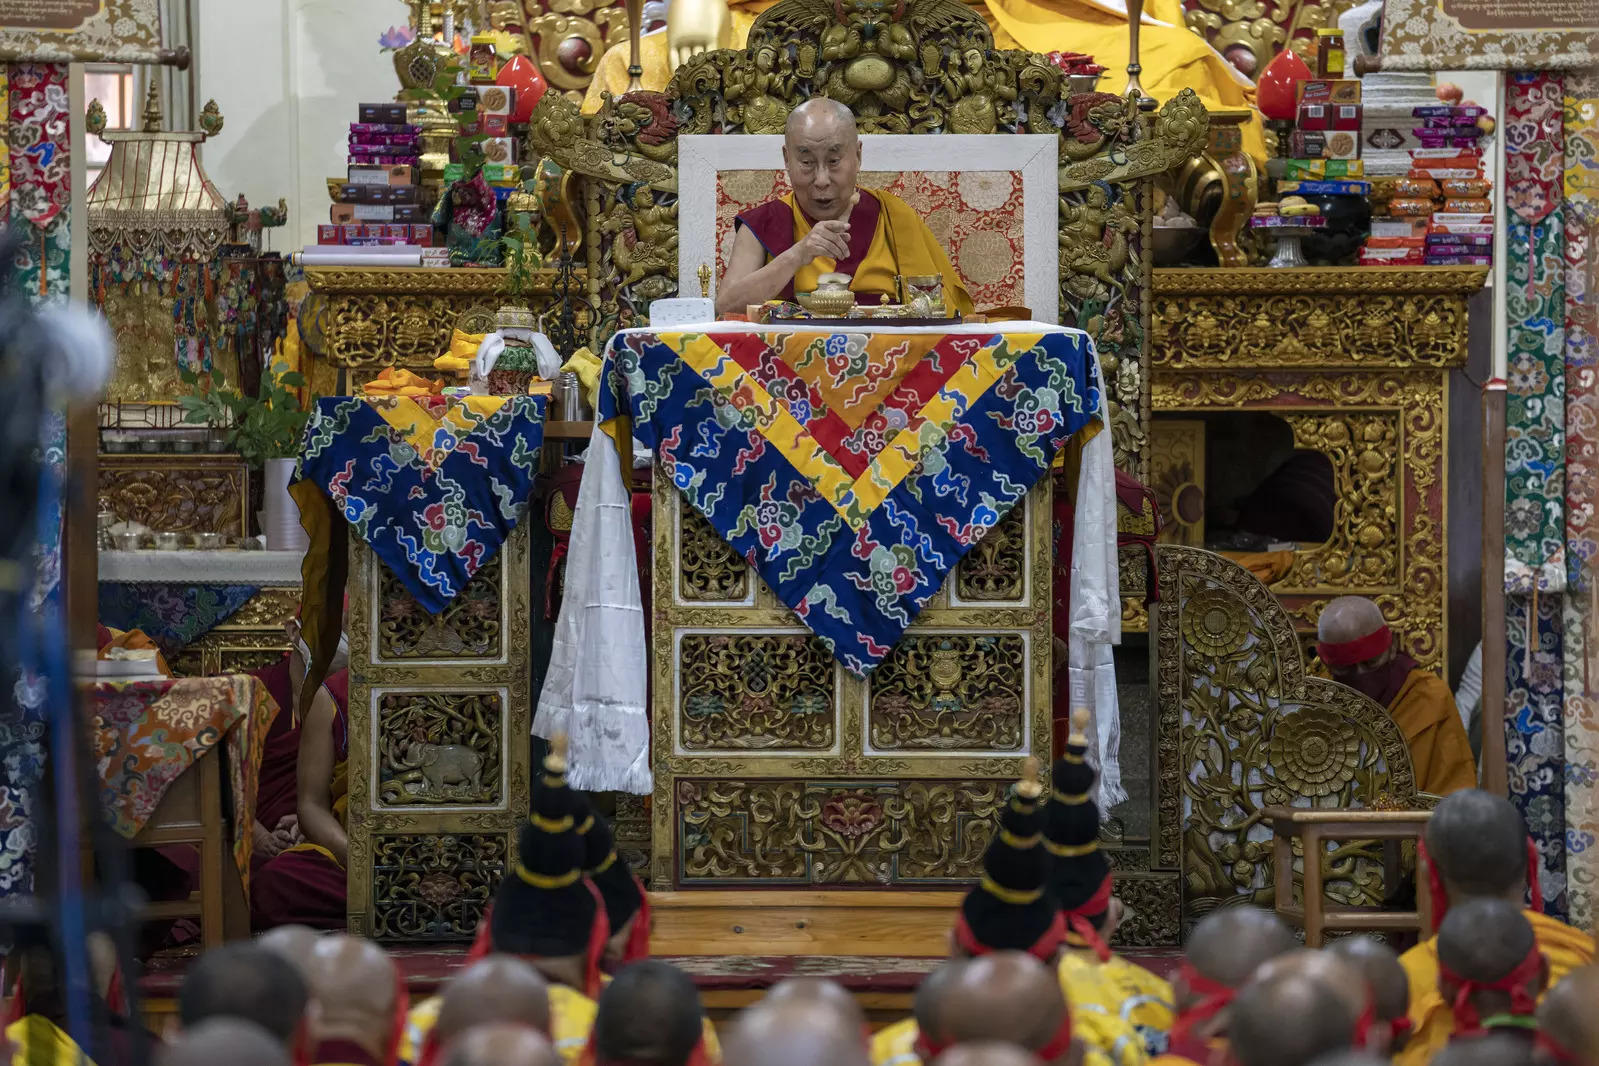 Tibetan spiritual leader the Dalai Lama (File photo)